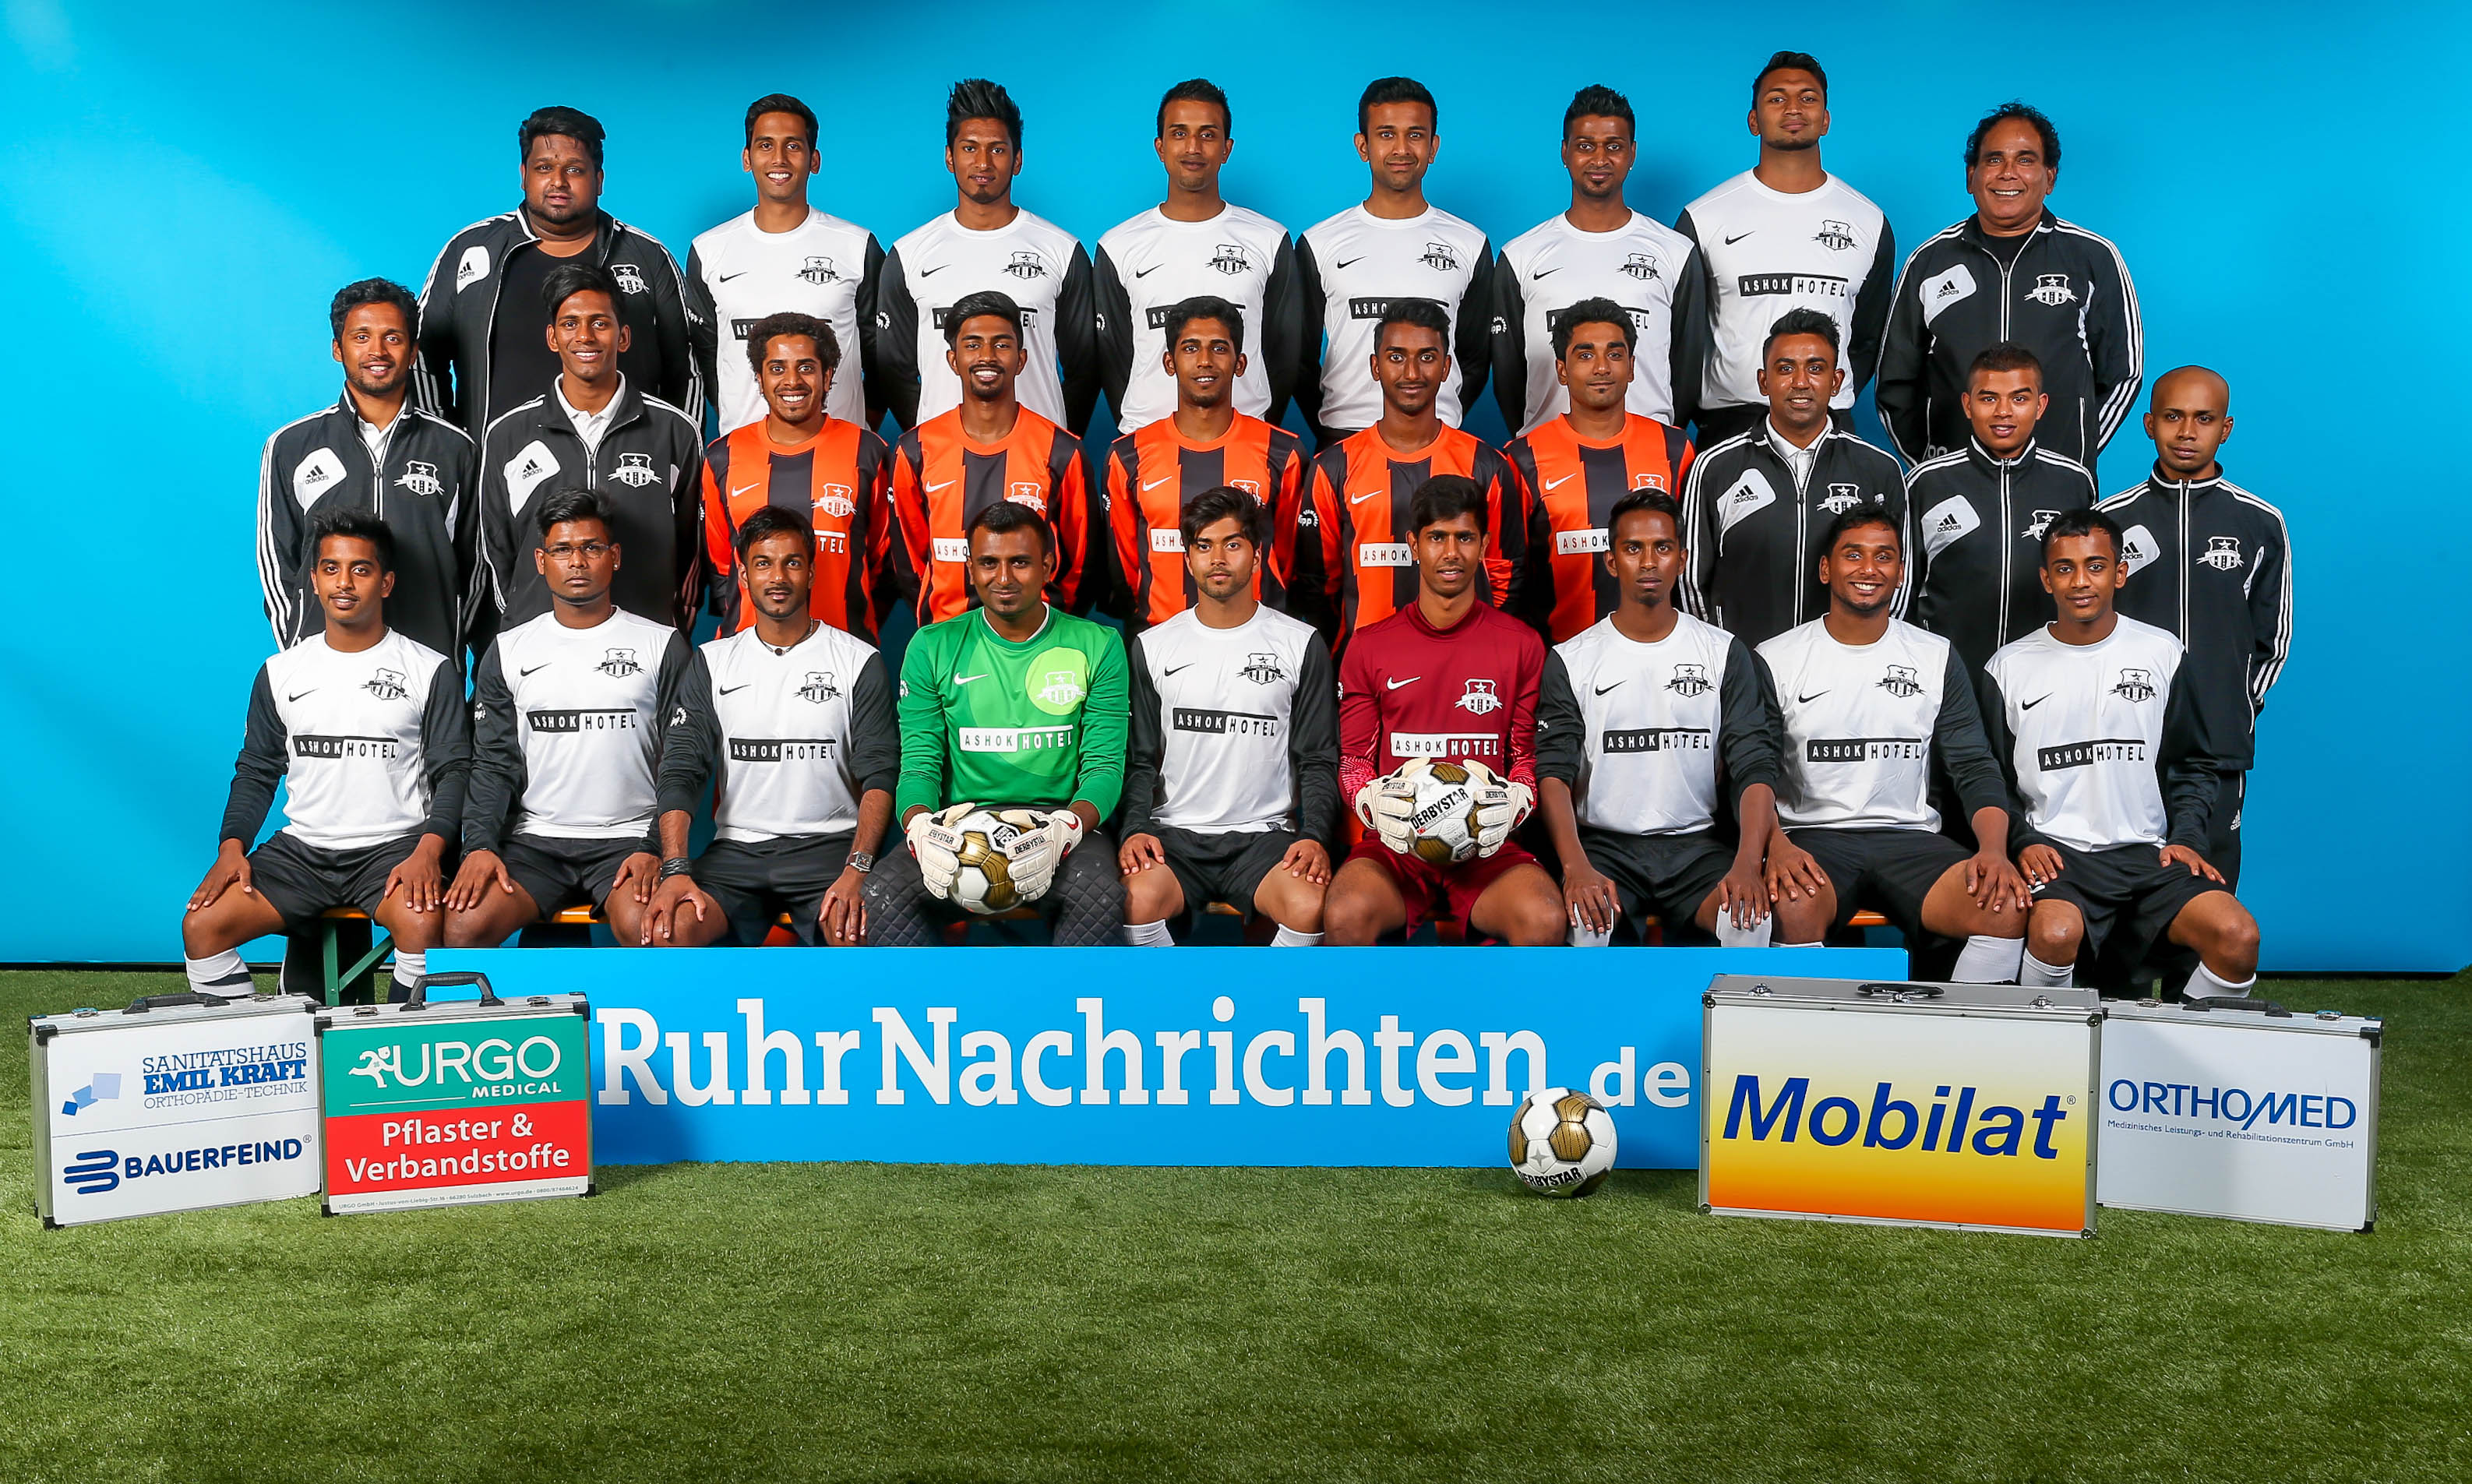 Mannschaftsfoto/Teamfoto von Tamilstars Dortmund